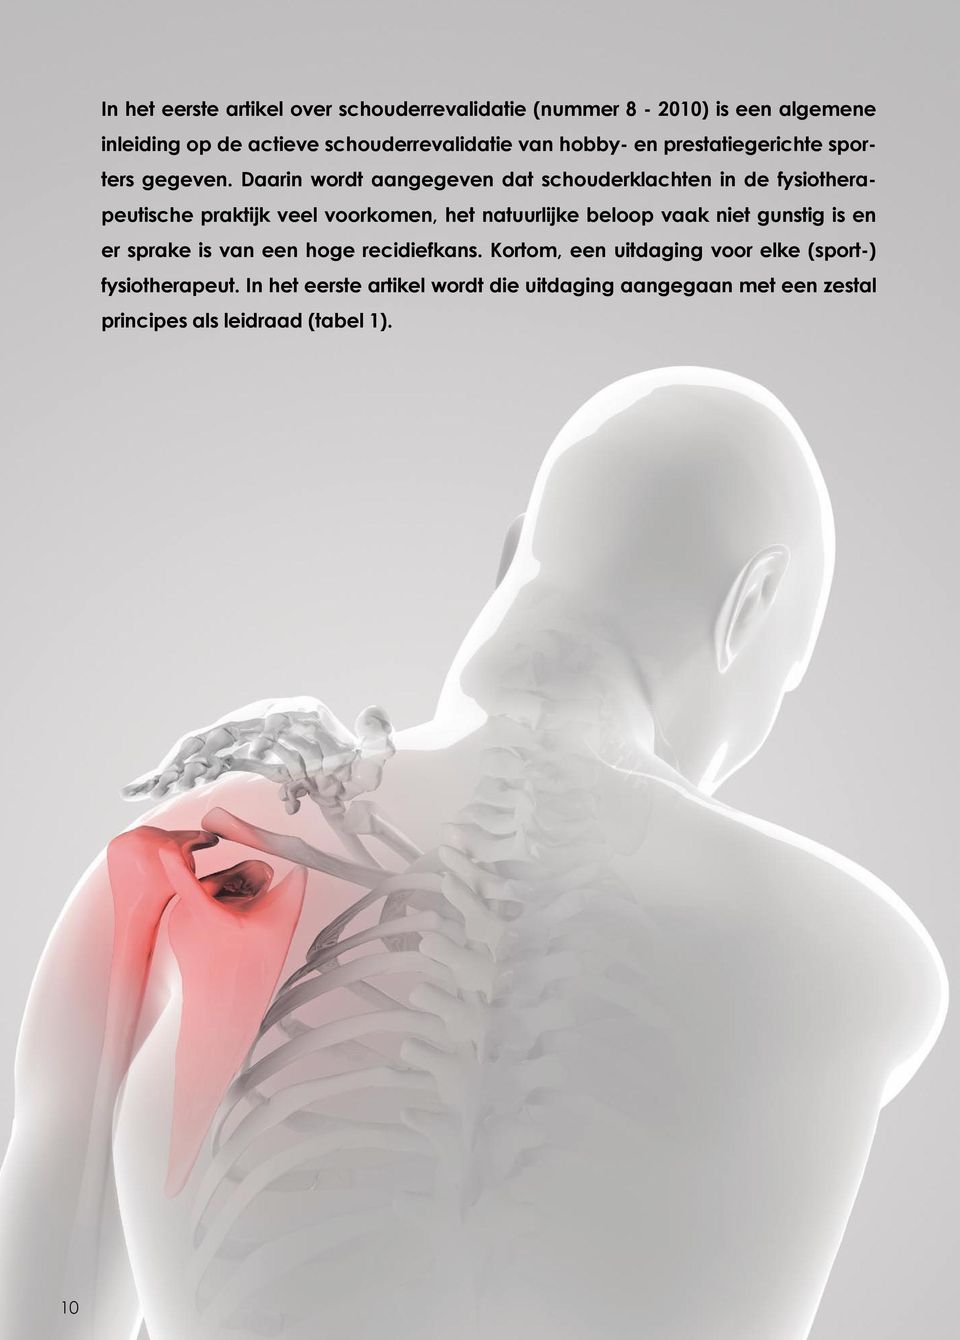 Daarin wordt aangegeven dat schouderklachten in de fysiotherapeutische praktijk veel voorkomen, het natuurlijke beloop vaak niet